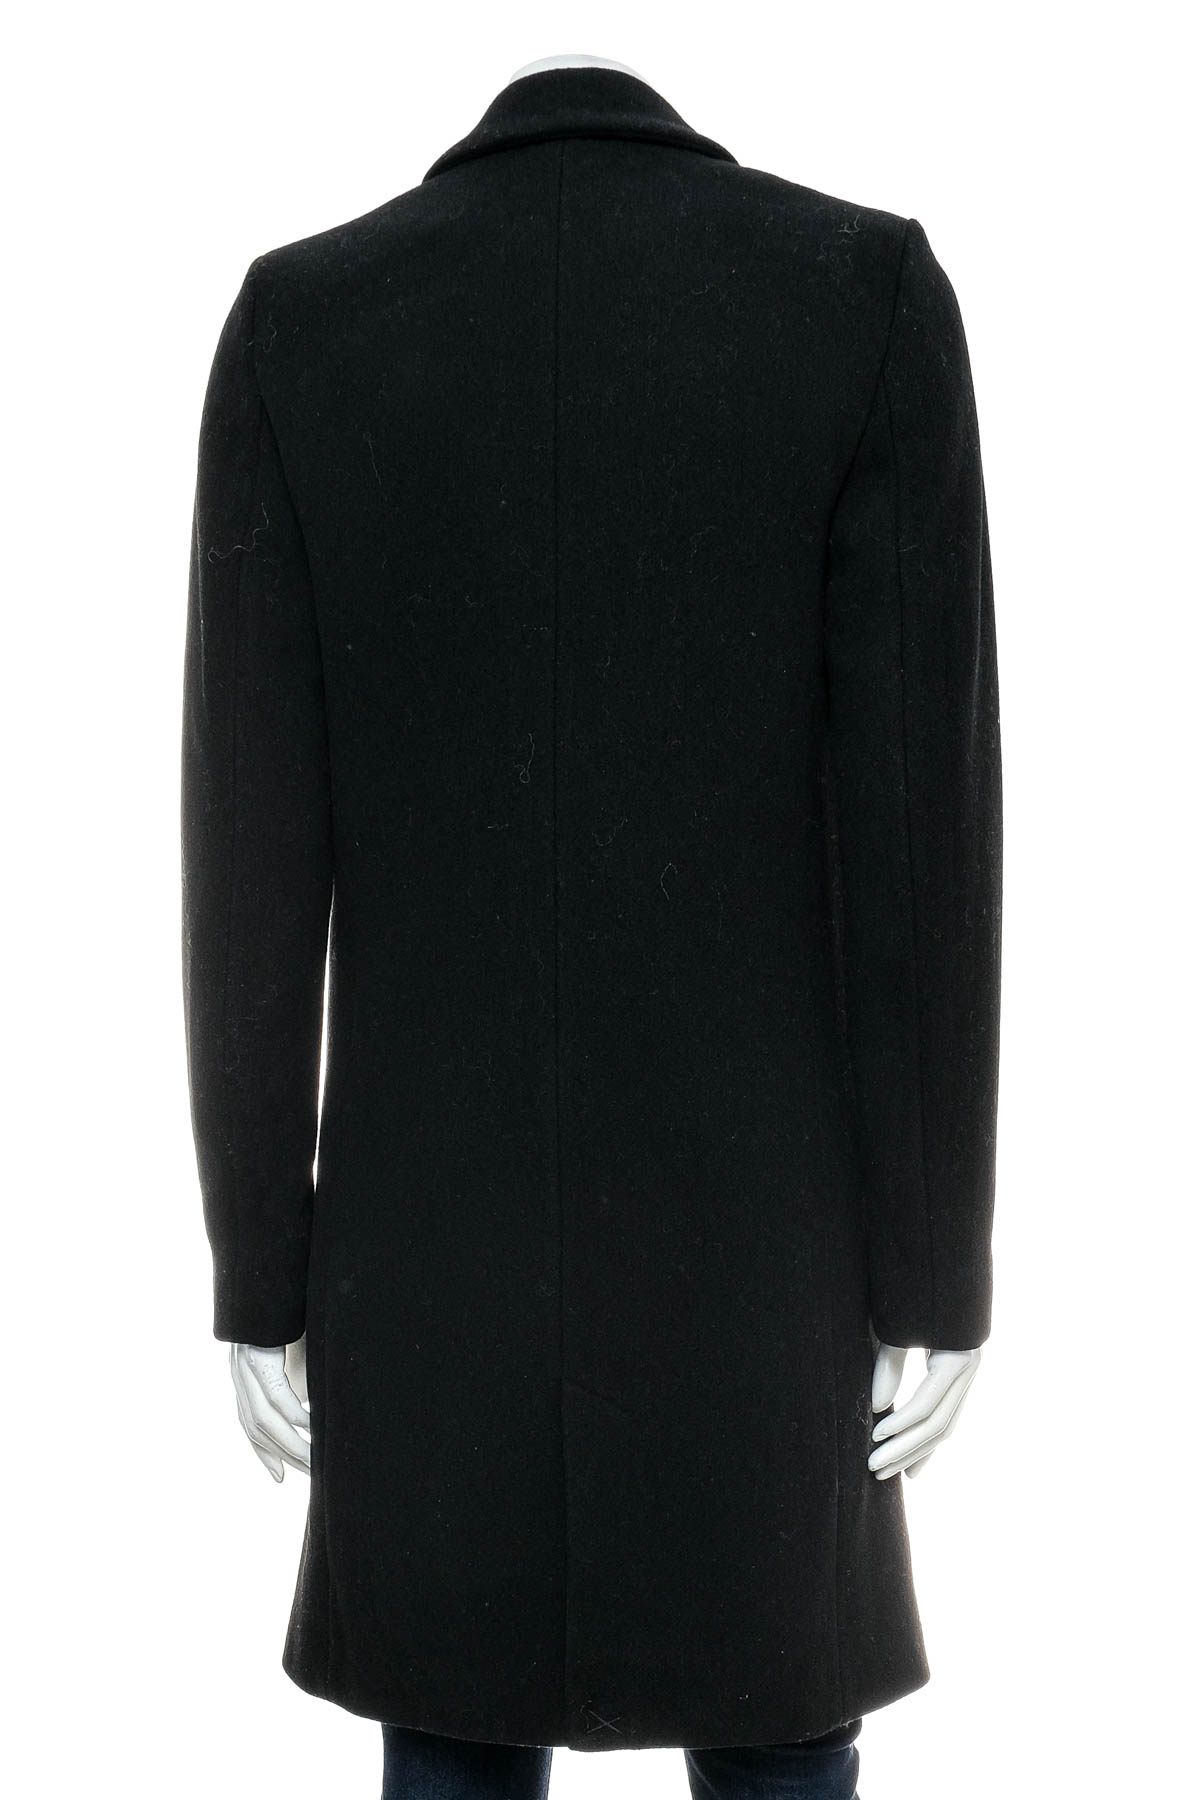 Women's coat - ZARA TRAFALUC - 1